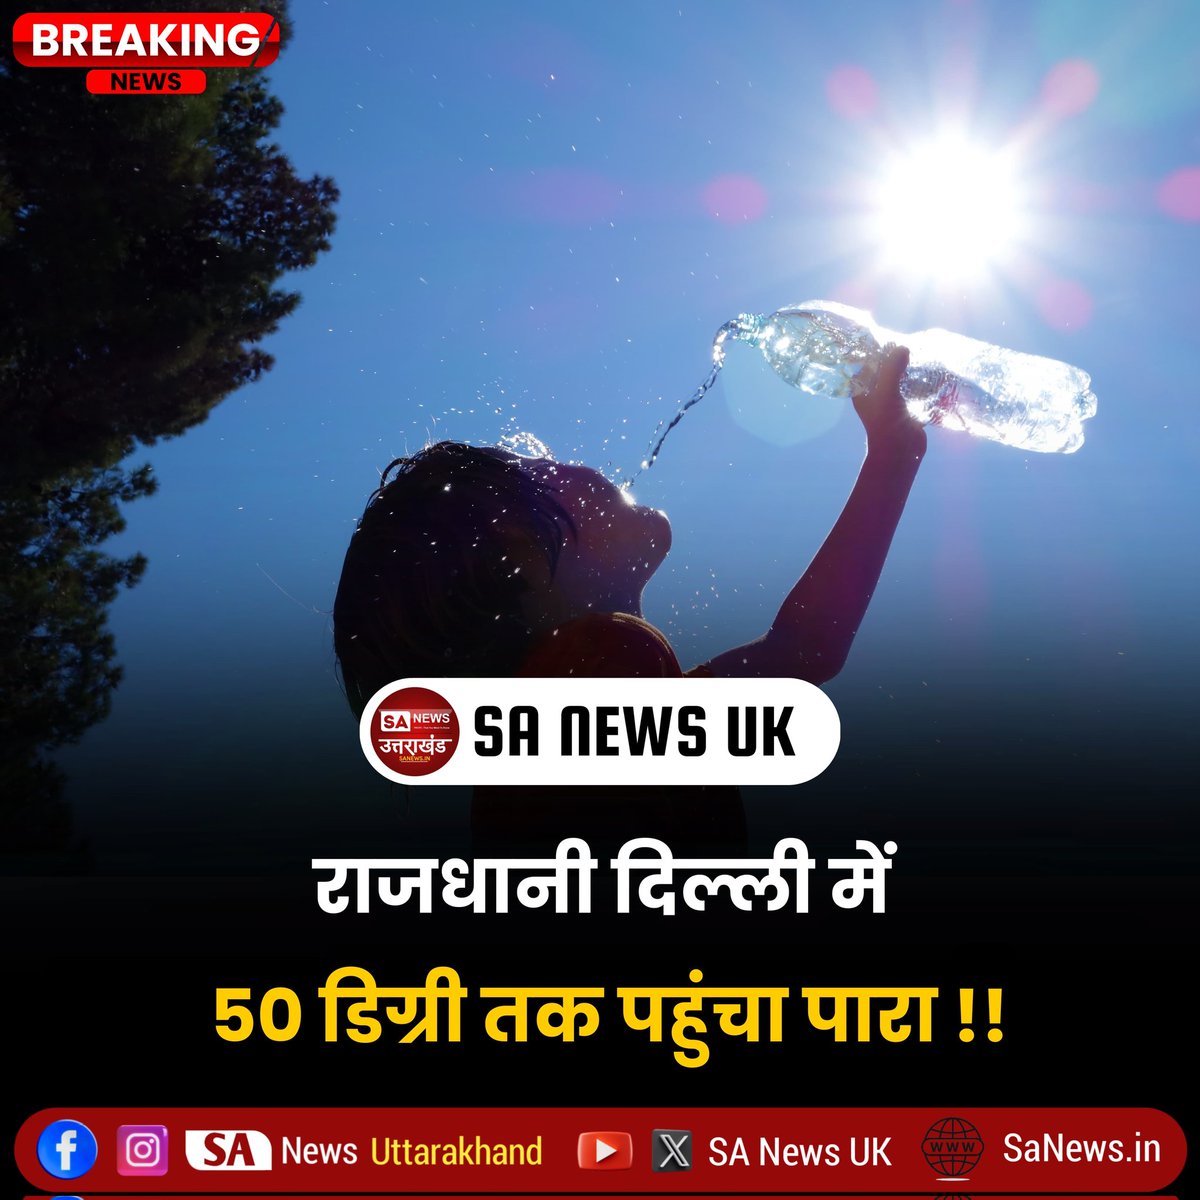 देश की राजधानी दिल्ली में भीषण गर्मी पड़ रही है। कई इलाकों का पारा 50 डिग्री सेल्सियस के करीब पहुंच गया है। दिल्ली के सफदरजंग में मंगलवार को अधिकतम तापमान 45.8 डिग्री रिकॉर्ड किया गया। यह सामान्य से 5 डिग्री ज्यादा है। वहीं मुंगेशपुर और नरेला में पारा 49.9 डिग्री दर्ज किया गया।